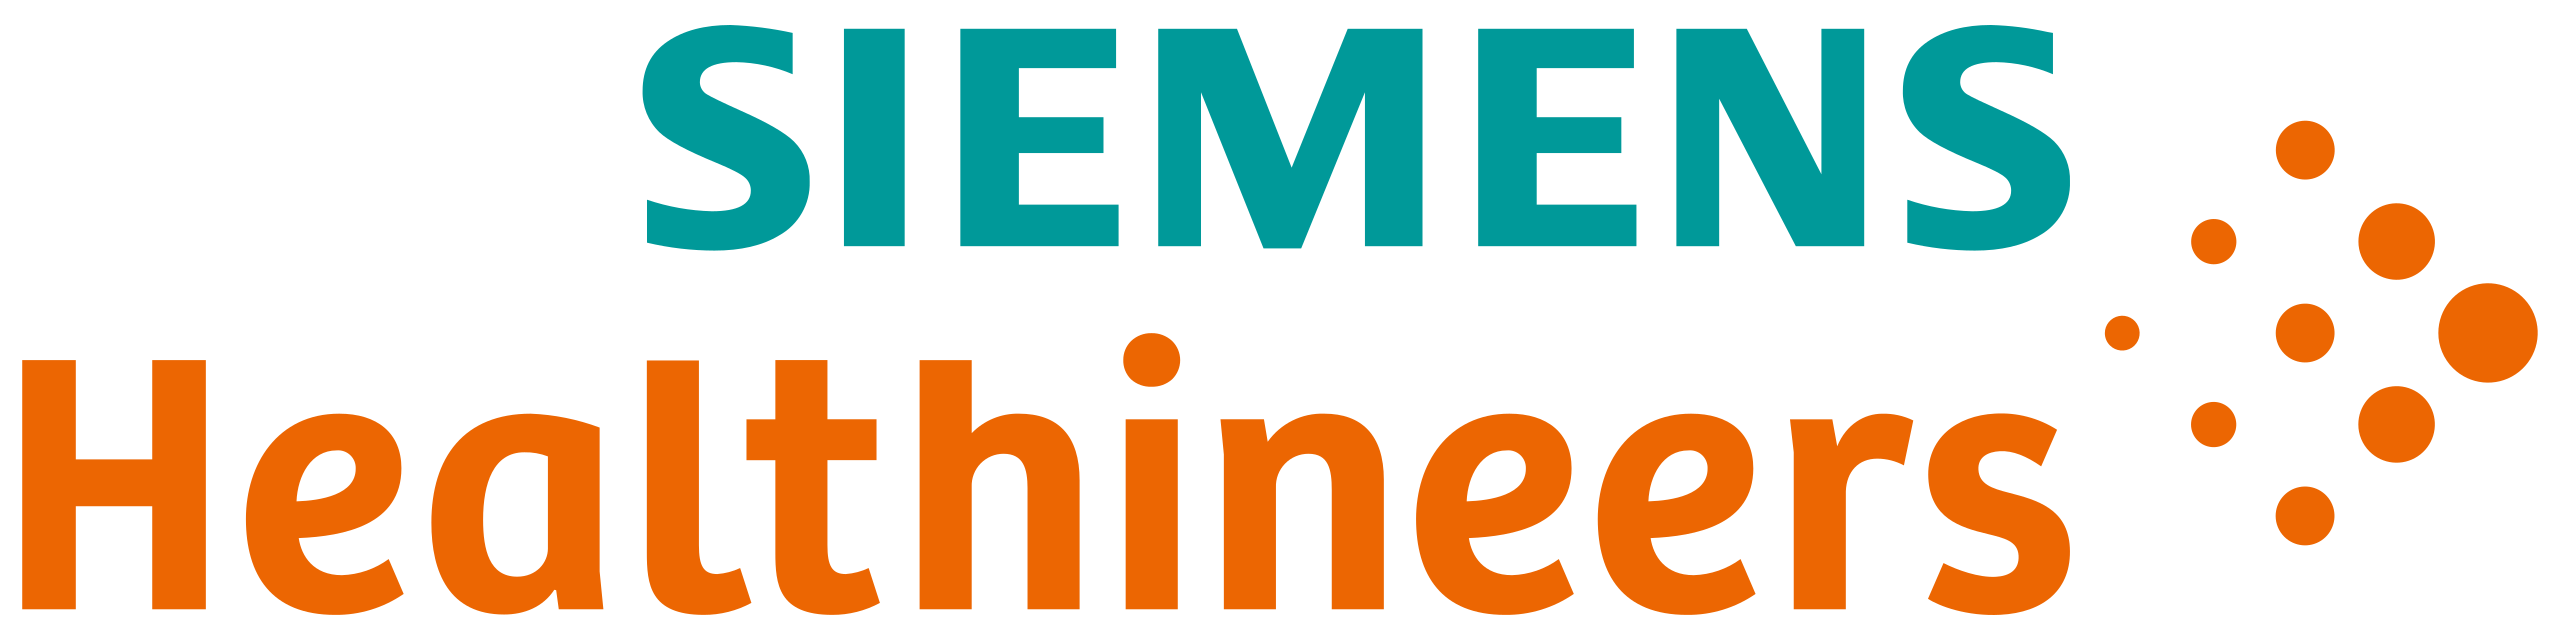 Siemens_Healthineers_logo